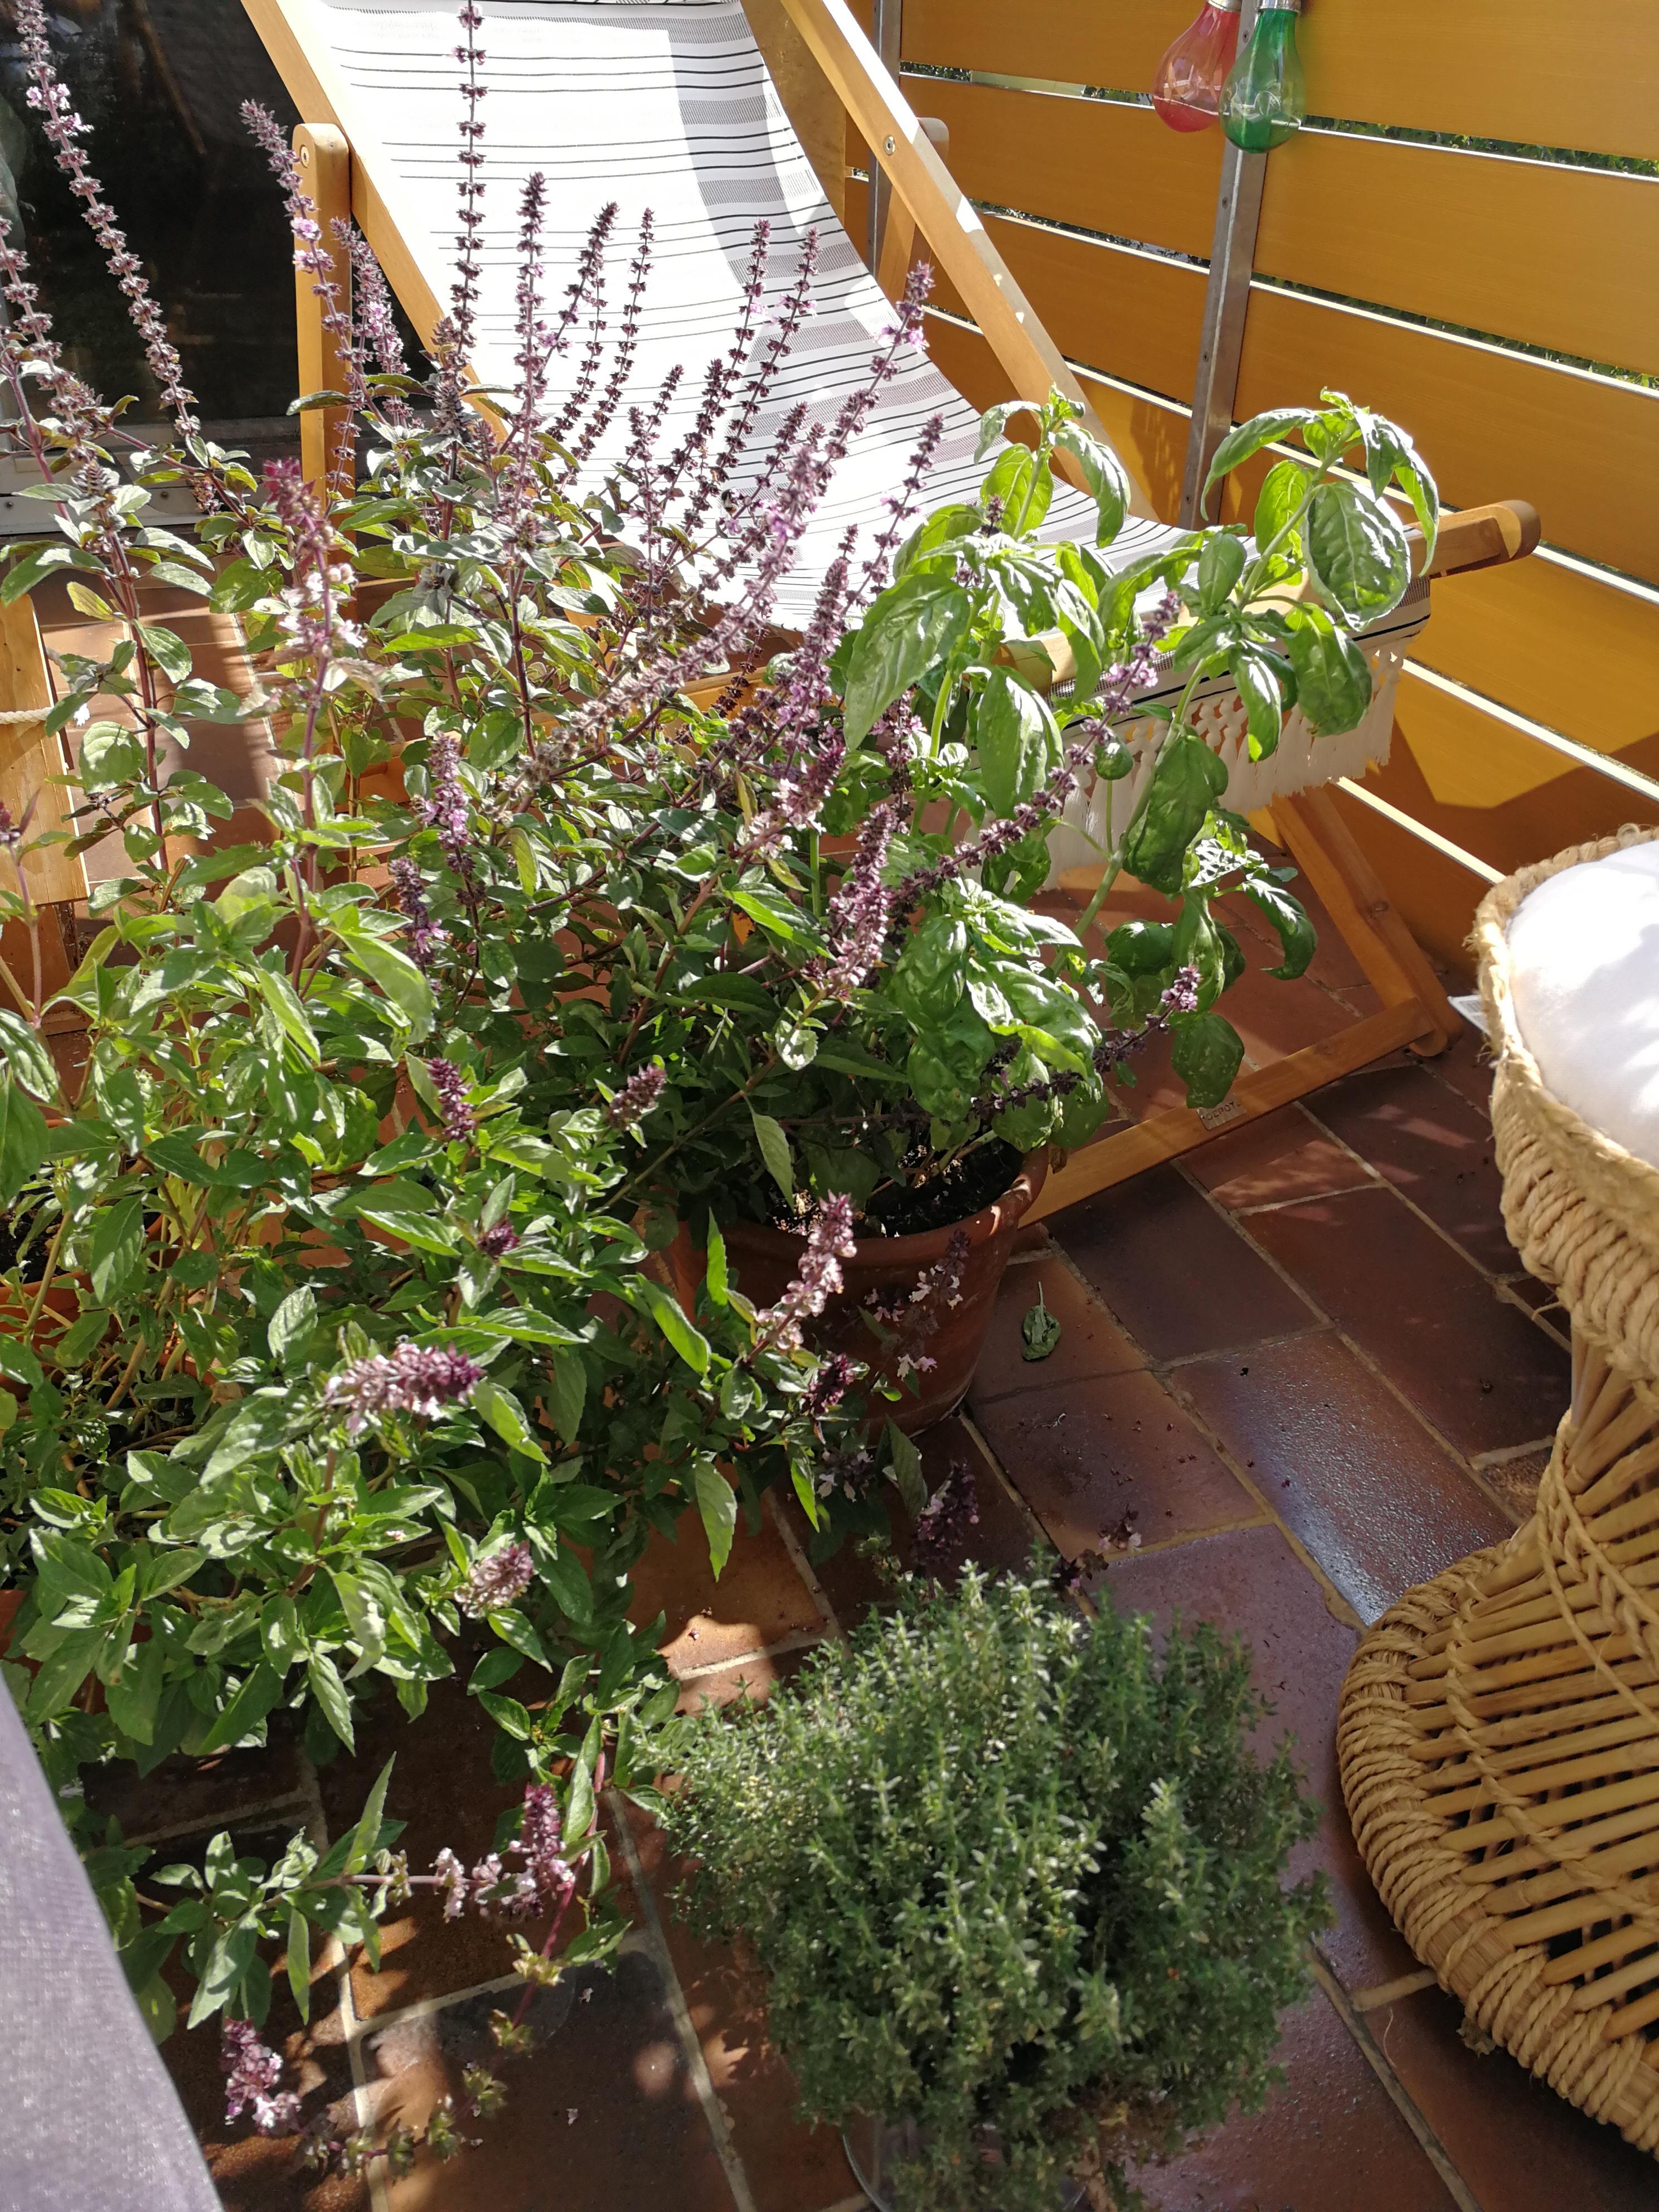 Ich liebe Sonntage ☺️
#sundays #balkon #pflanzenliebe #spätsommer